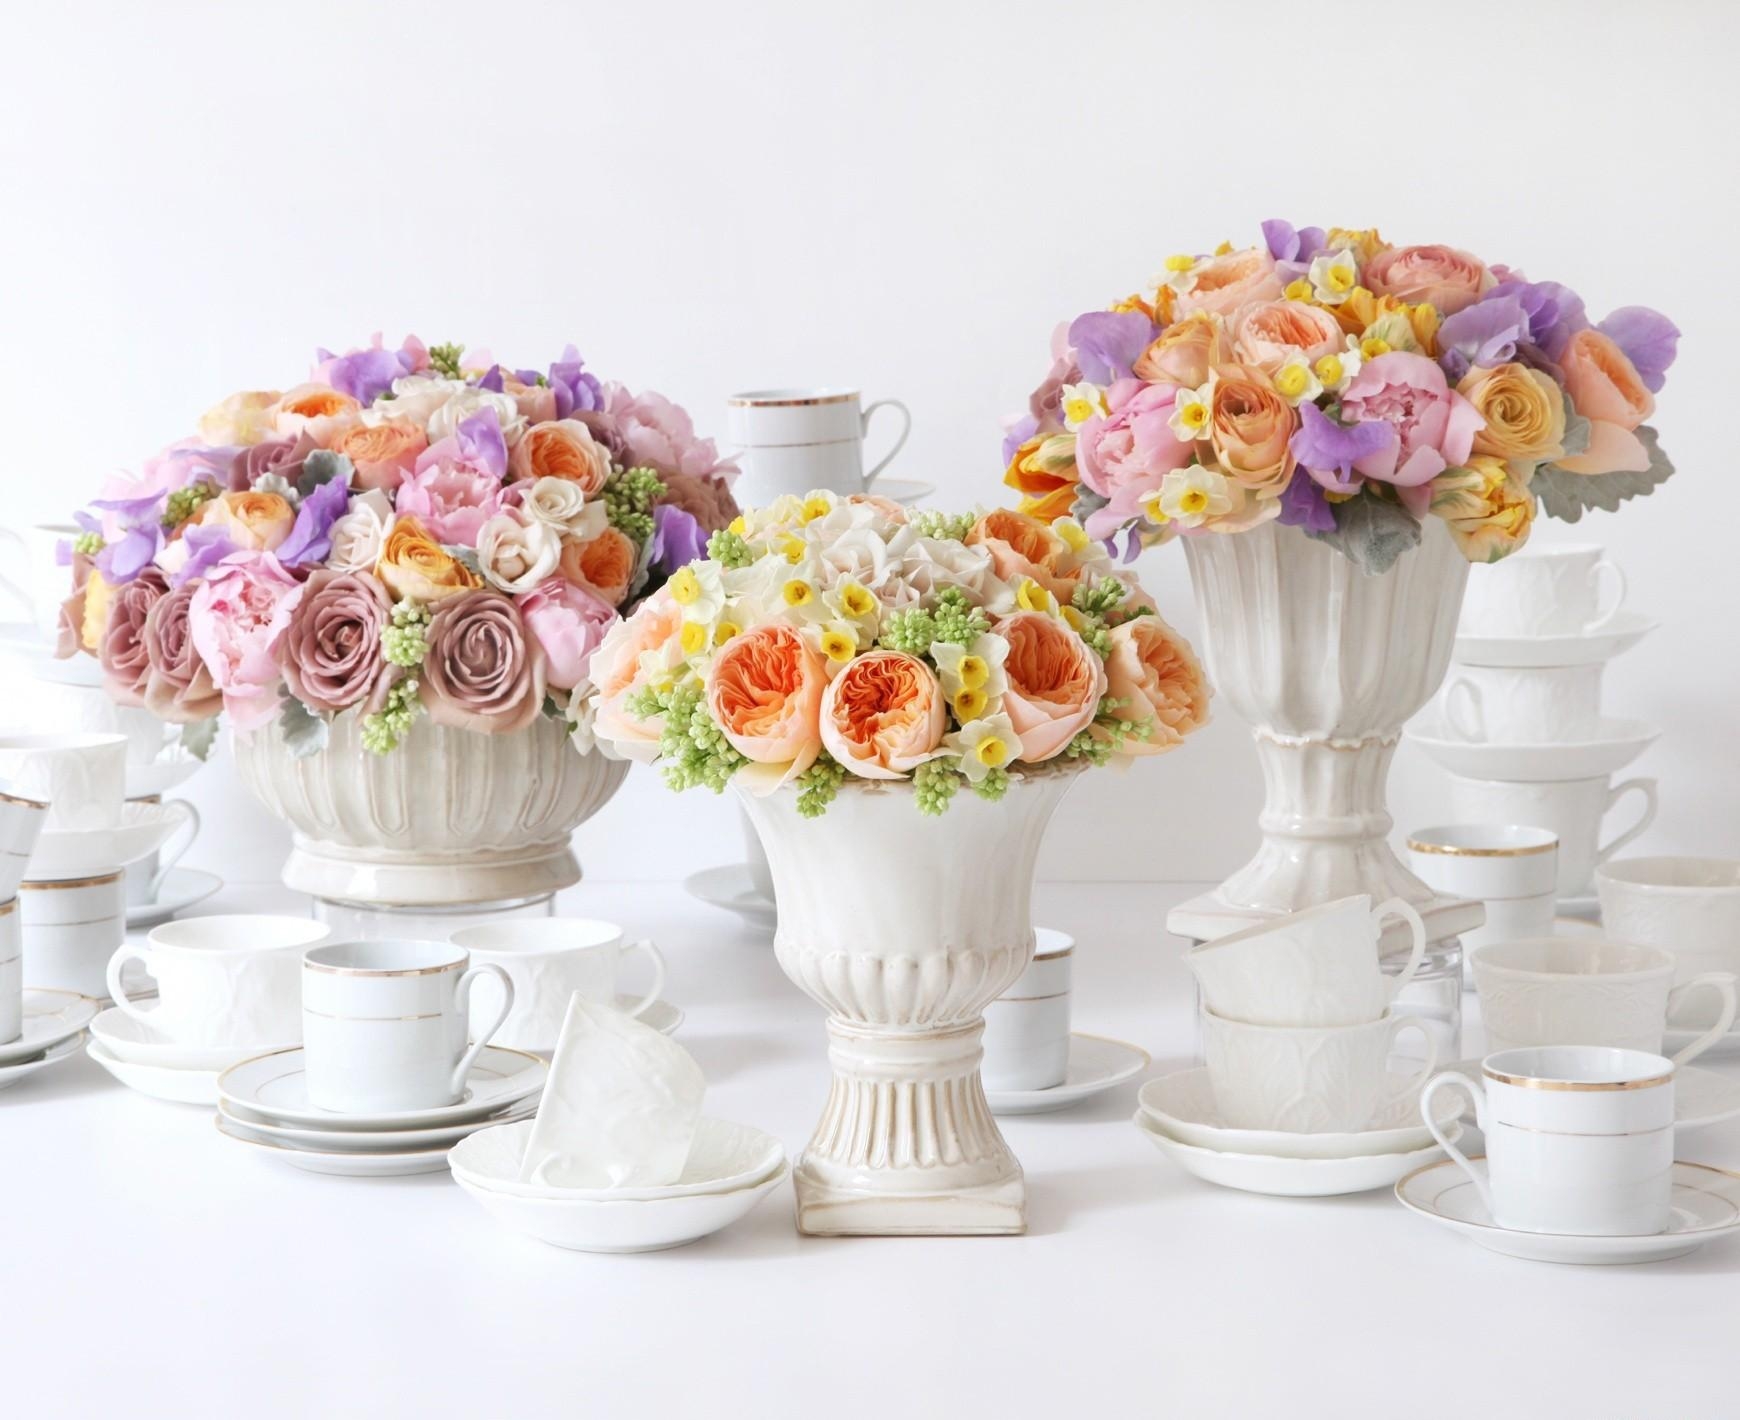 roses, narcissussi, flowers, bouquets, ranunculus, ranunkulus, vases, porcelain Smartphone Background